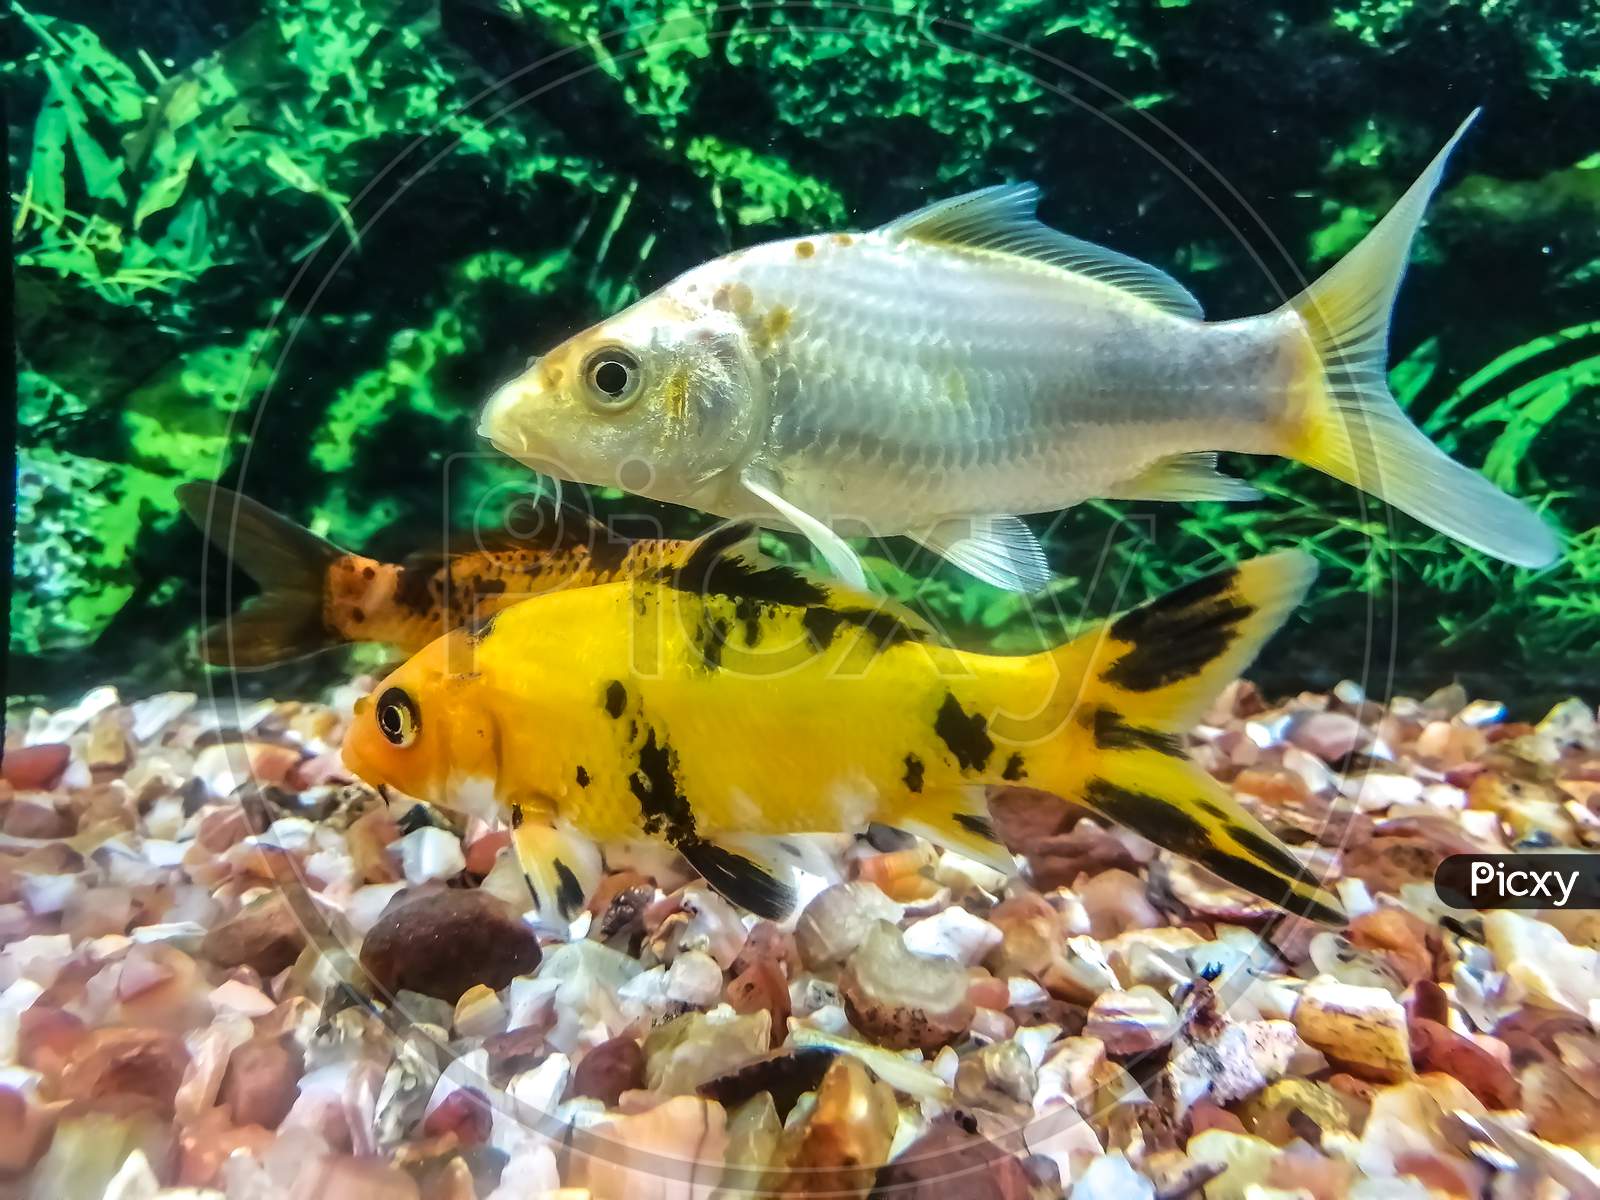 Japanese Koi Carp Fish in Aquarium